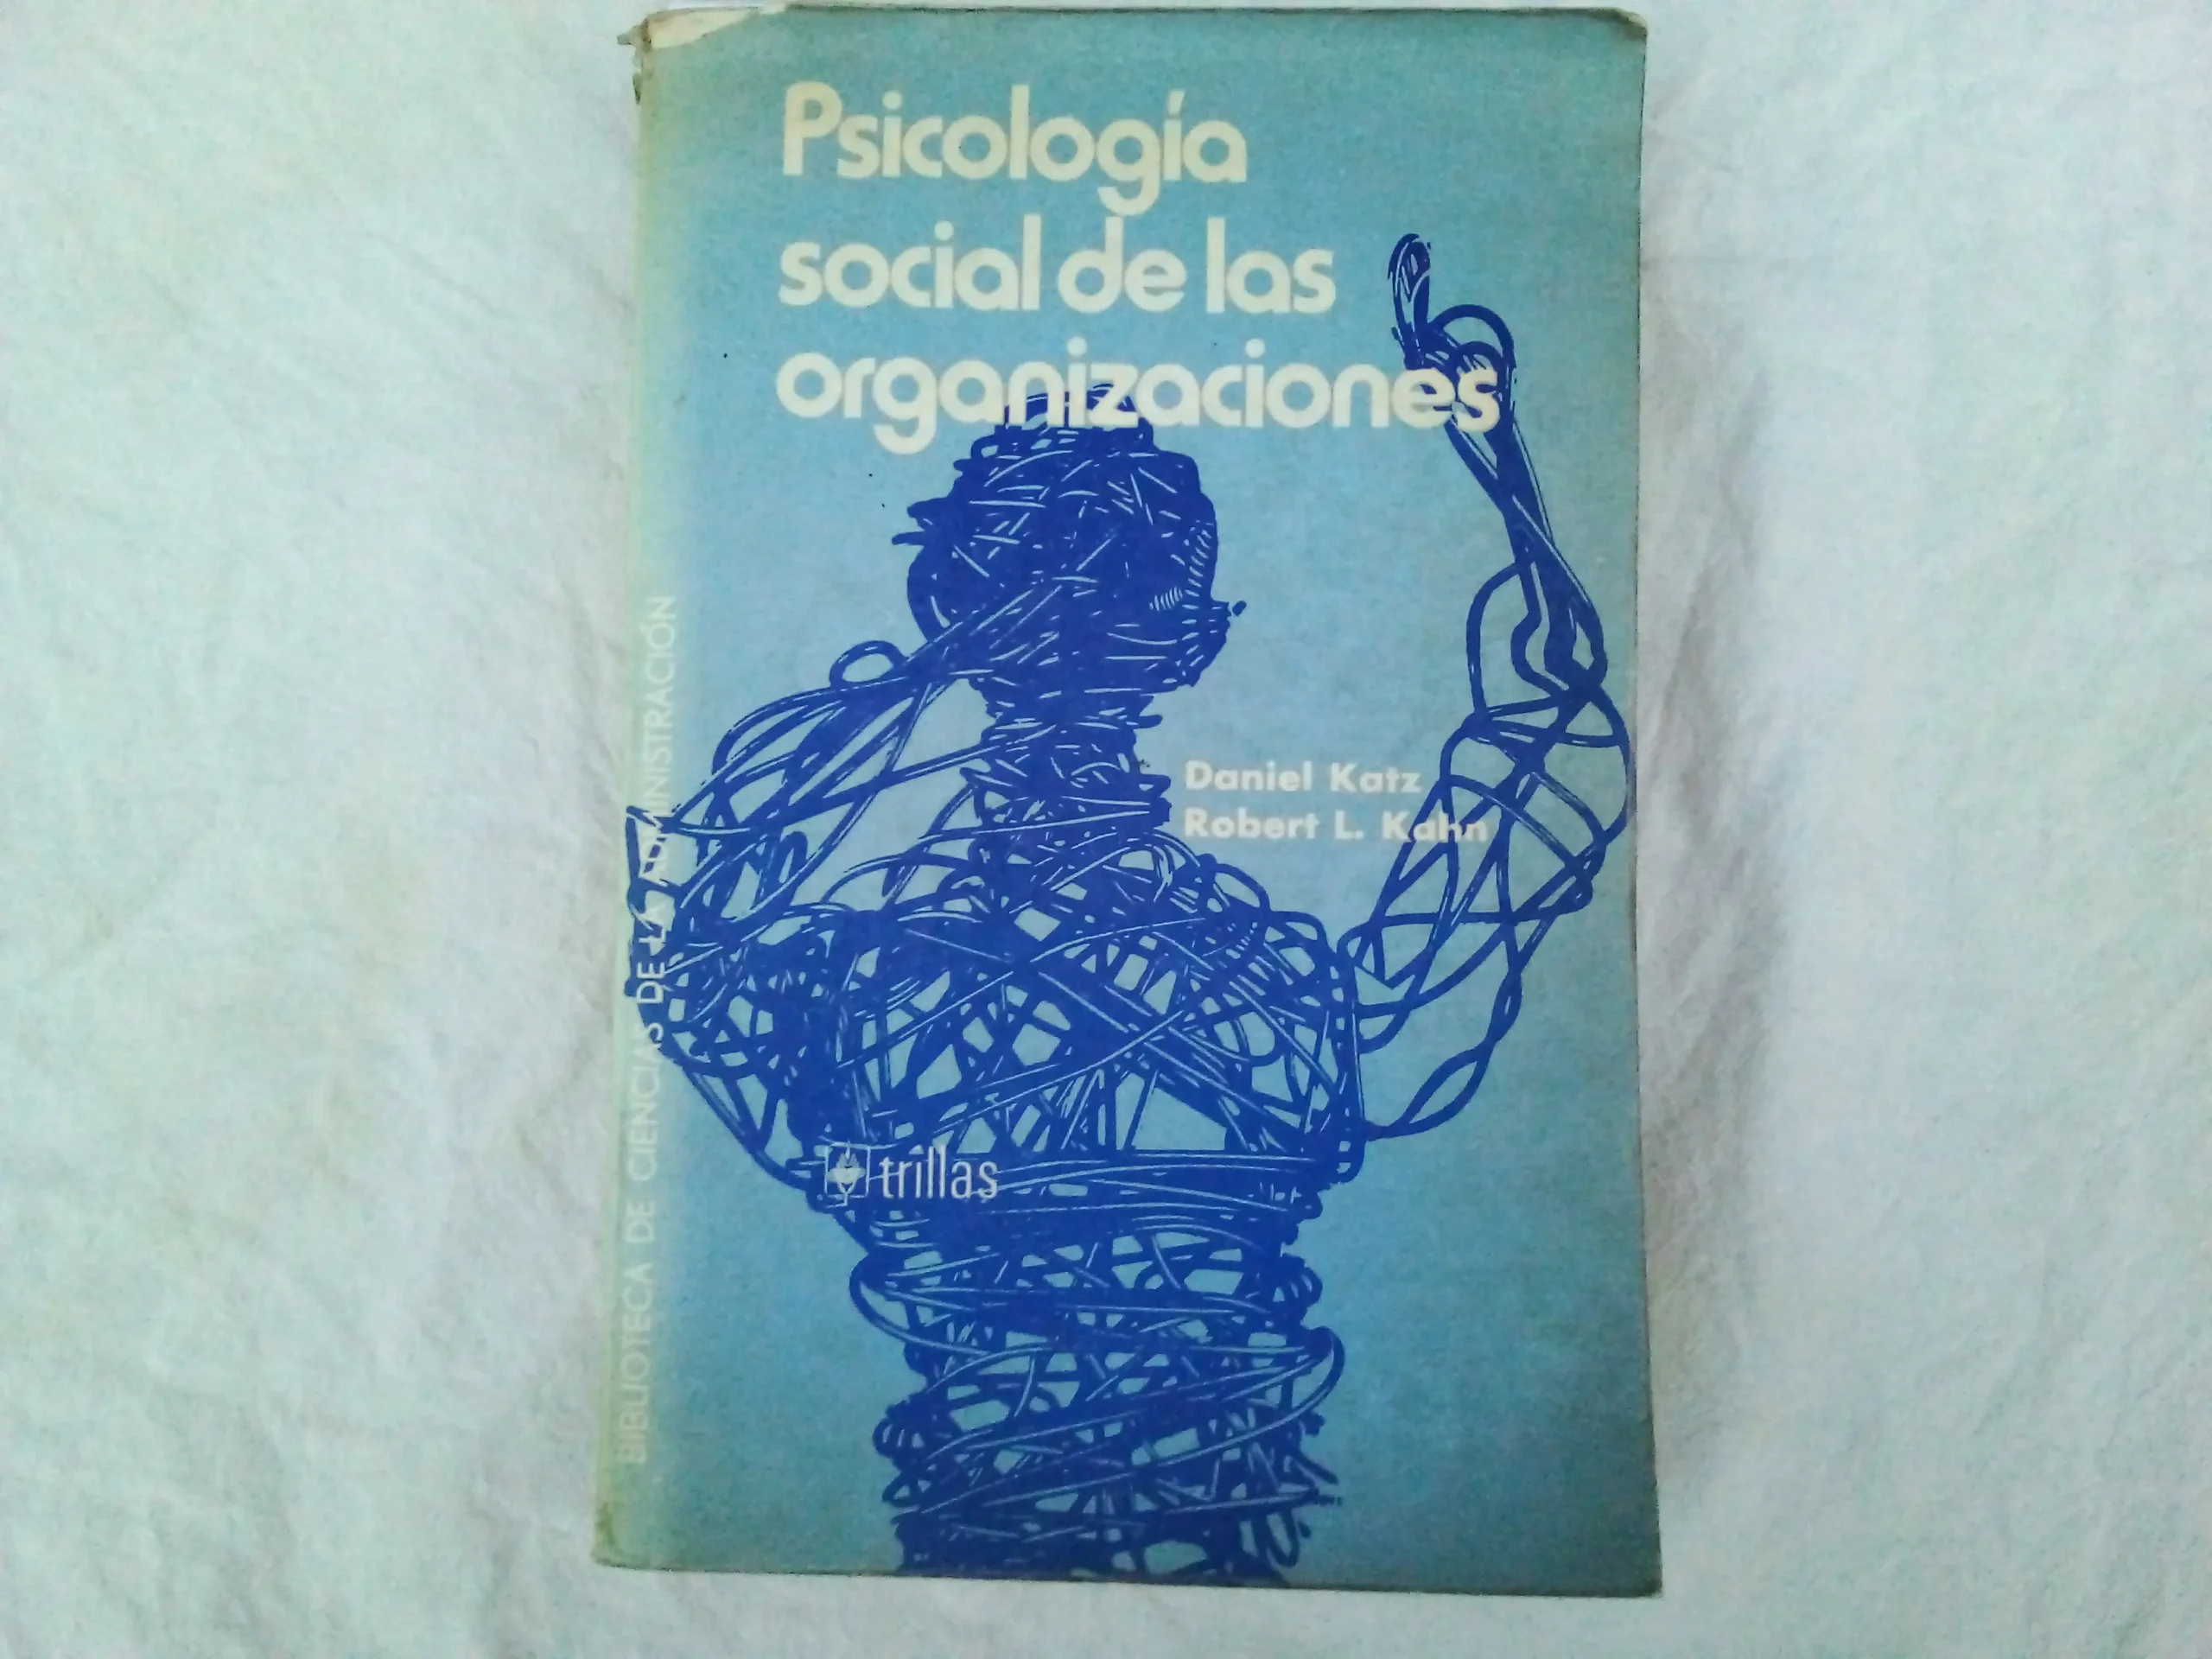 katz y kahn psicologia social de las organizaciones - Quién creó la teoría de las organizaciones como sistemas sociales